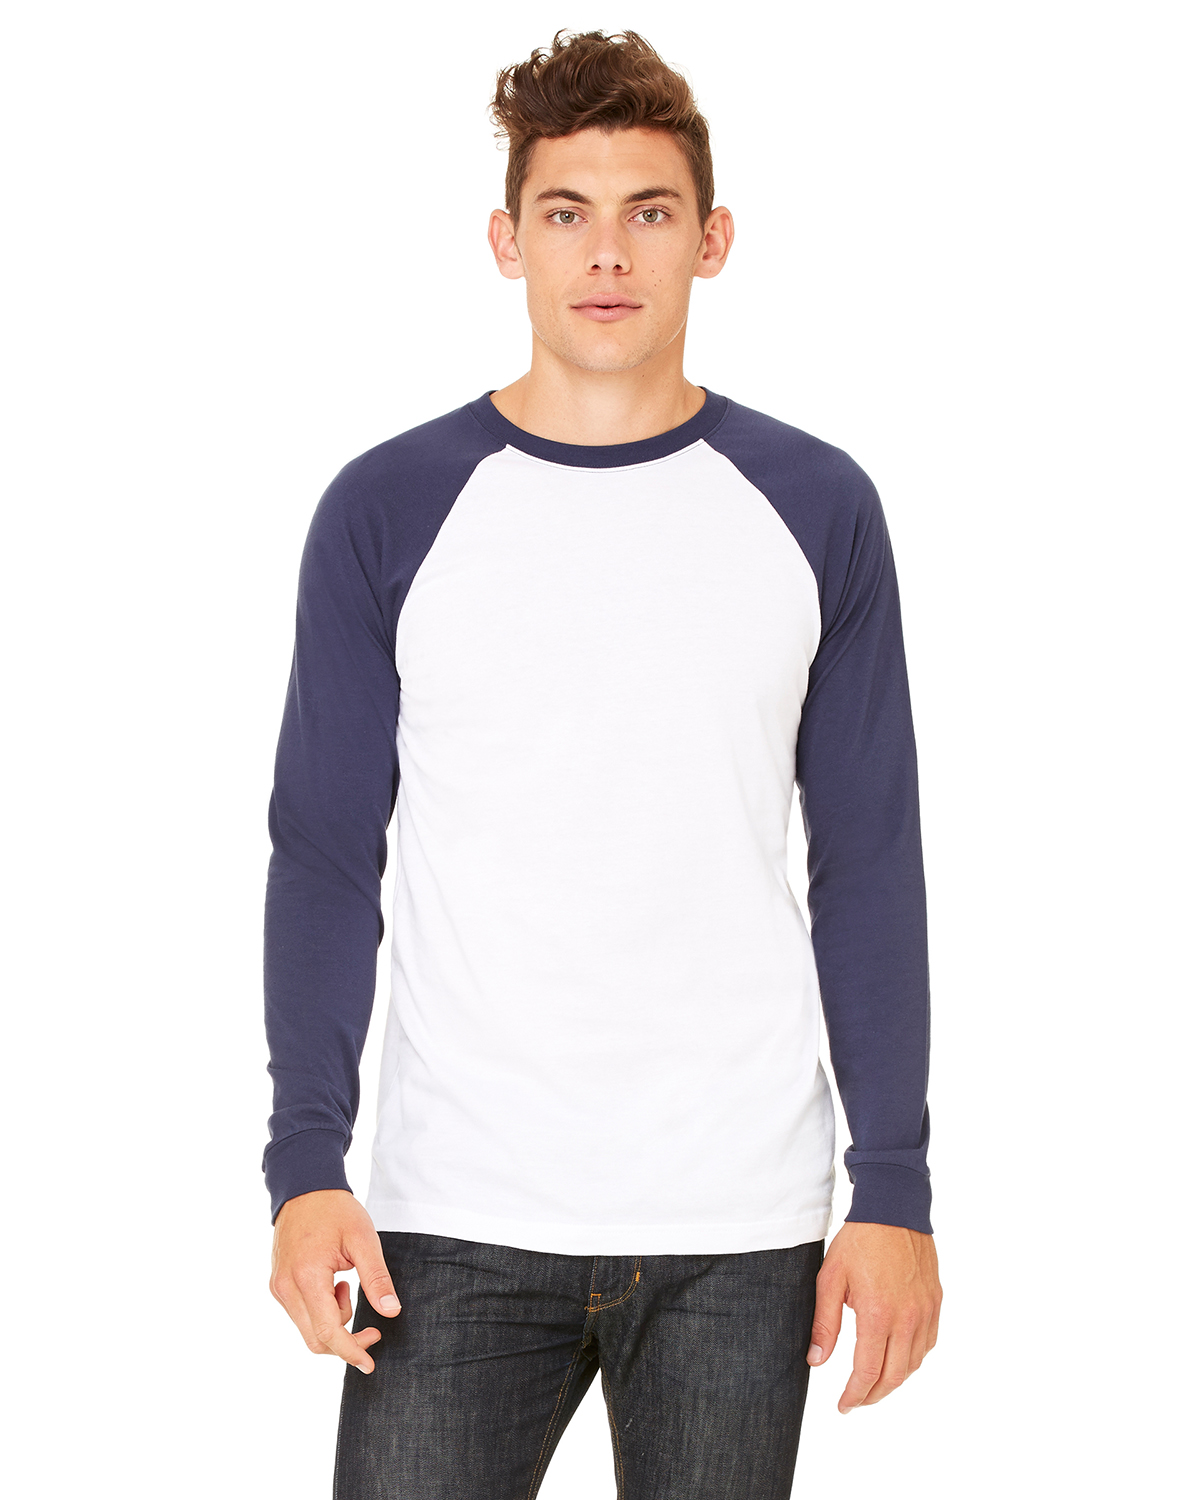 Mens Casual Long Sleeve Raglan Fit T-Shirt Blue Small Lattice Baseball Top 